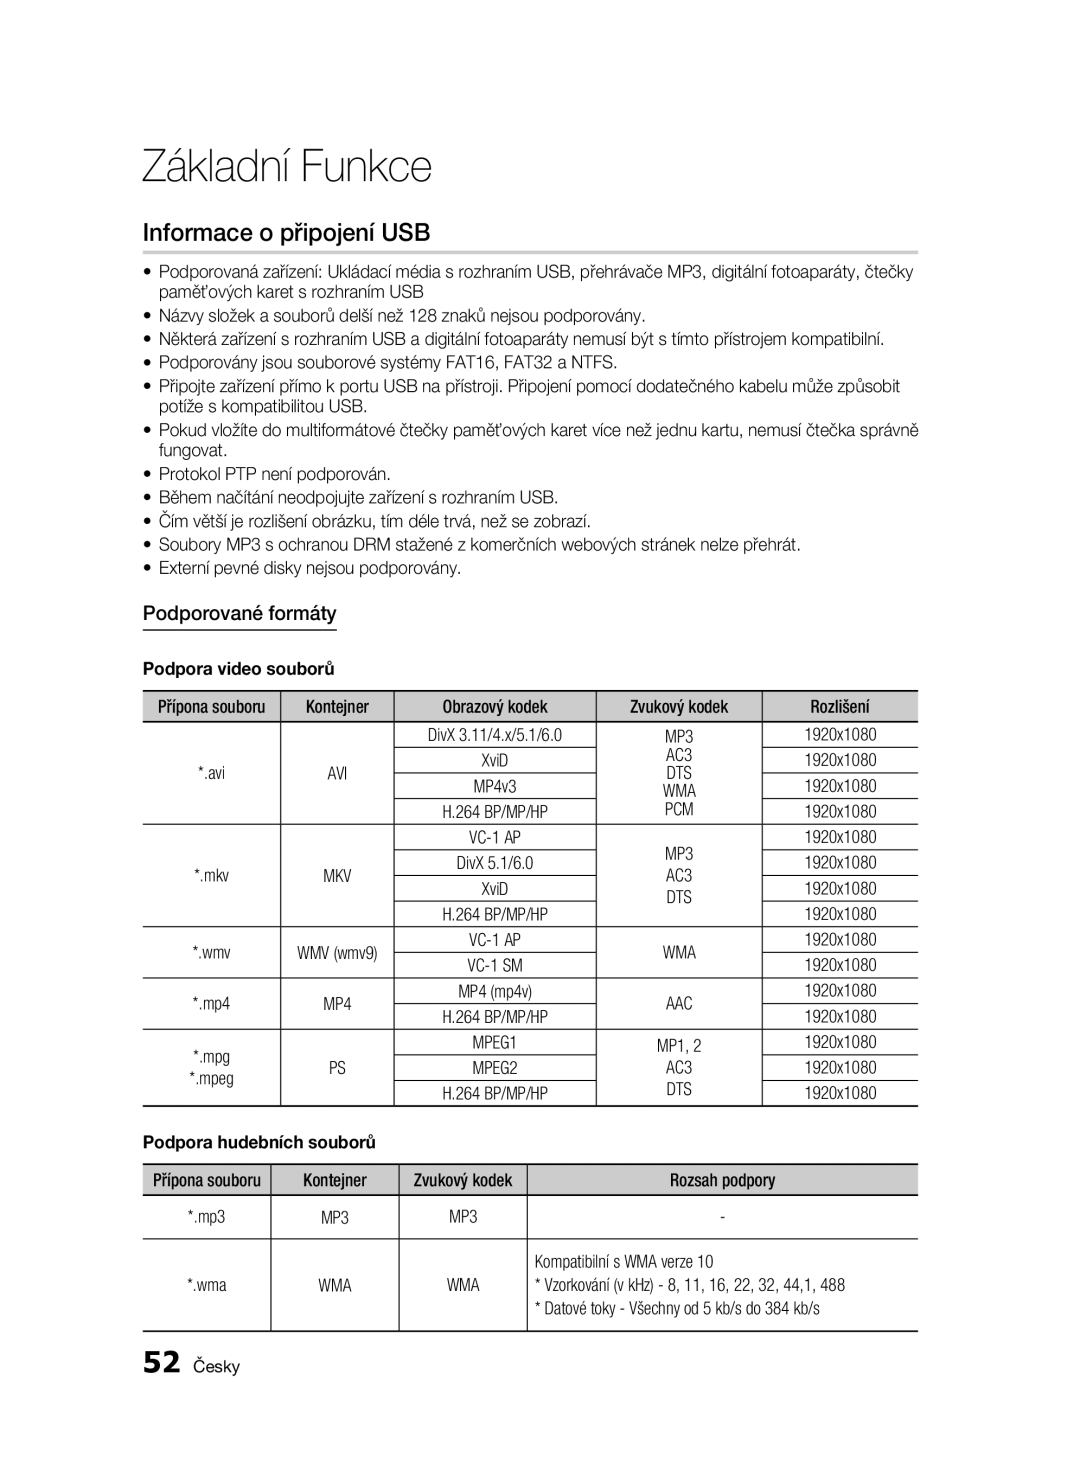 Samsung BD-C7500W/XEE Informace o připojení USB, Podporované formáty, Podpora video souborů, AC3, Kompatibilní s WMA verze 